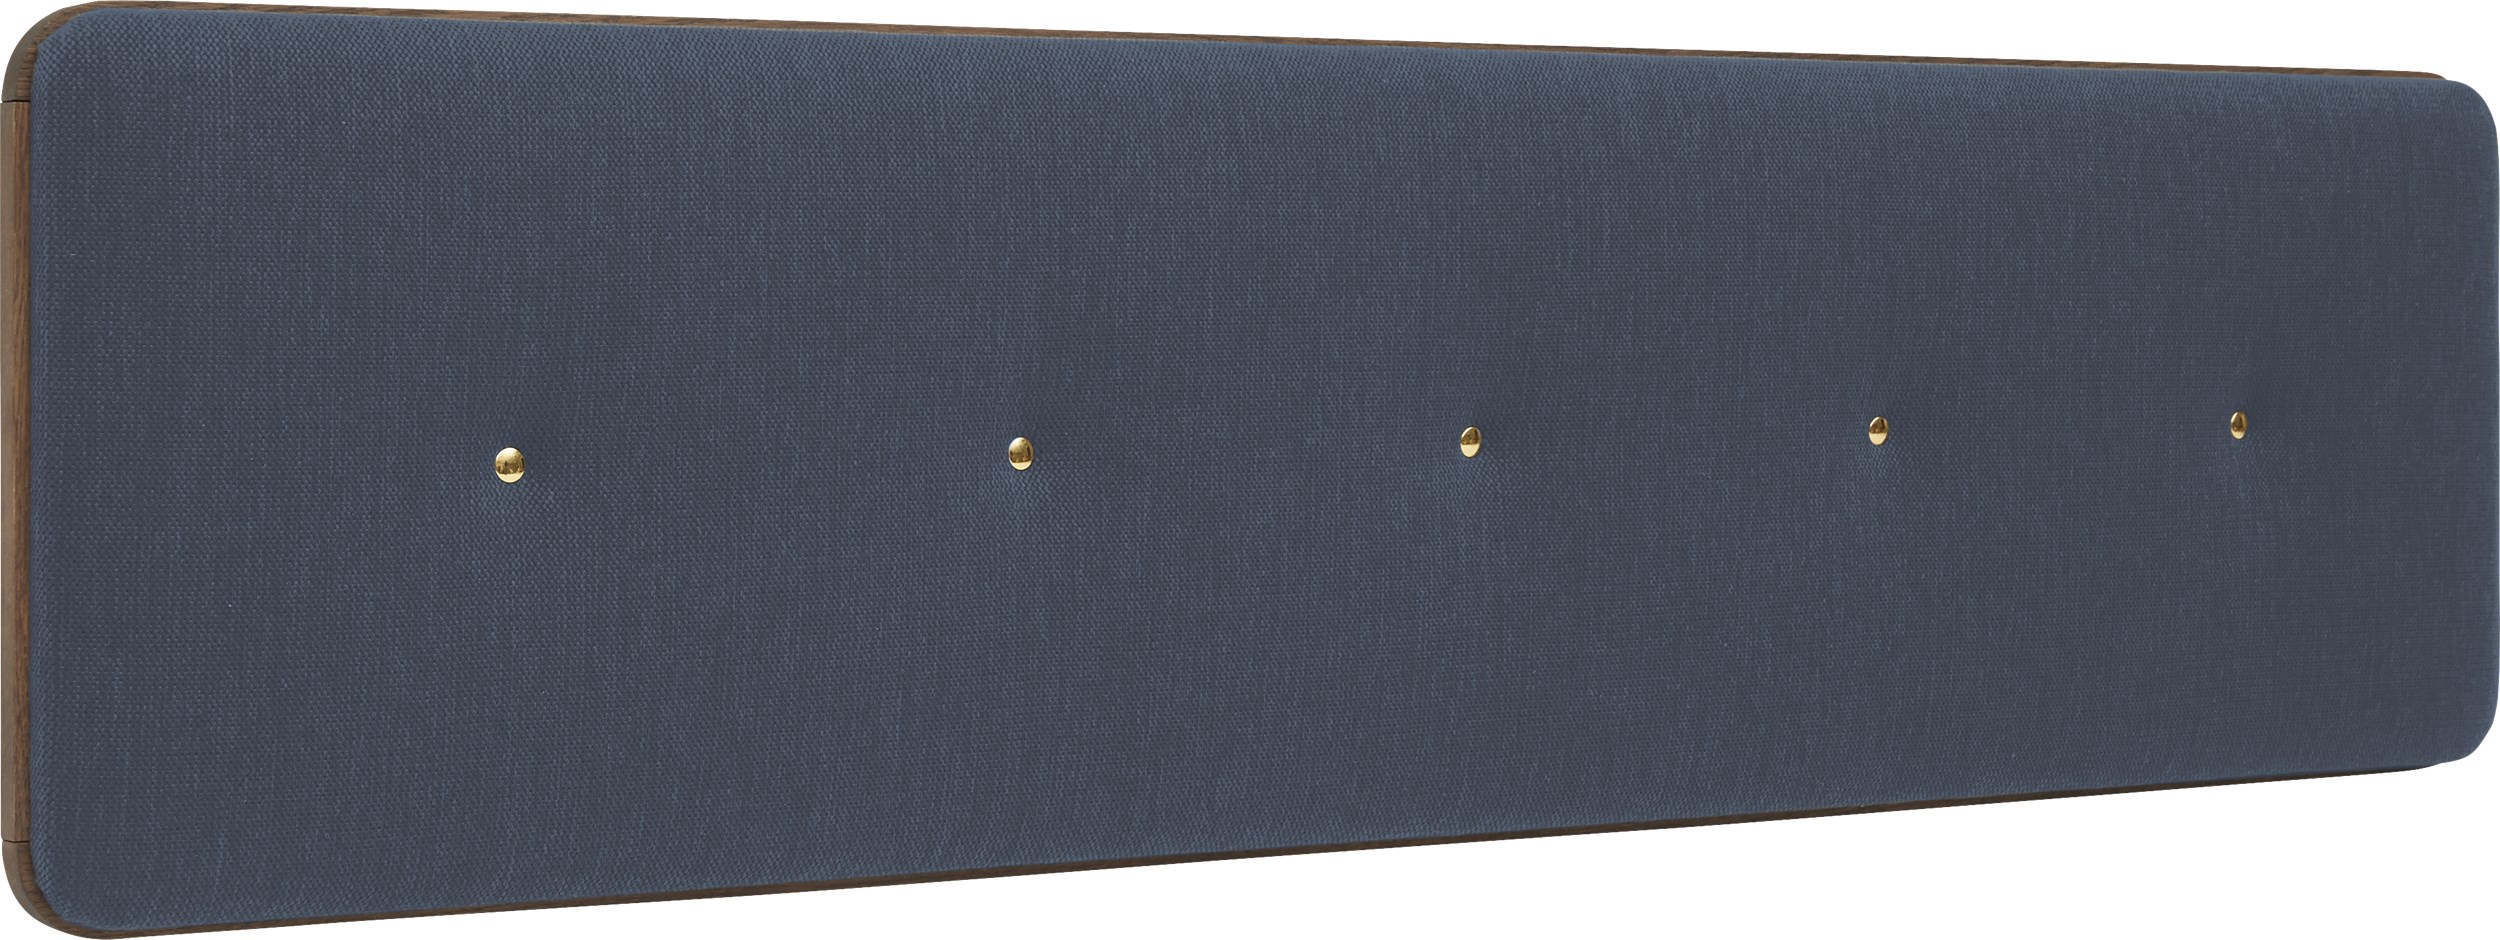 Match Small Sänggavel 180 x 45 x 6 cm - Blue och ram i mörkgråoljat ekfaner